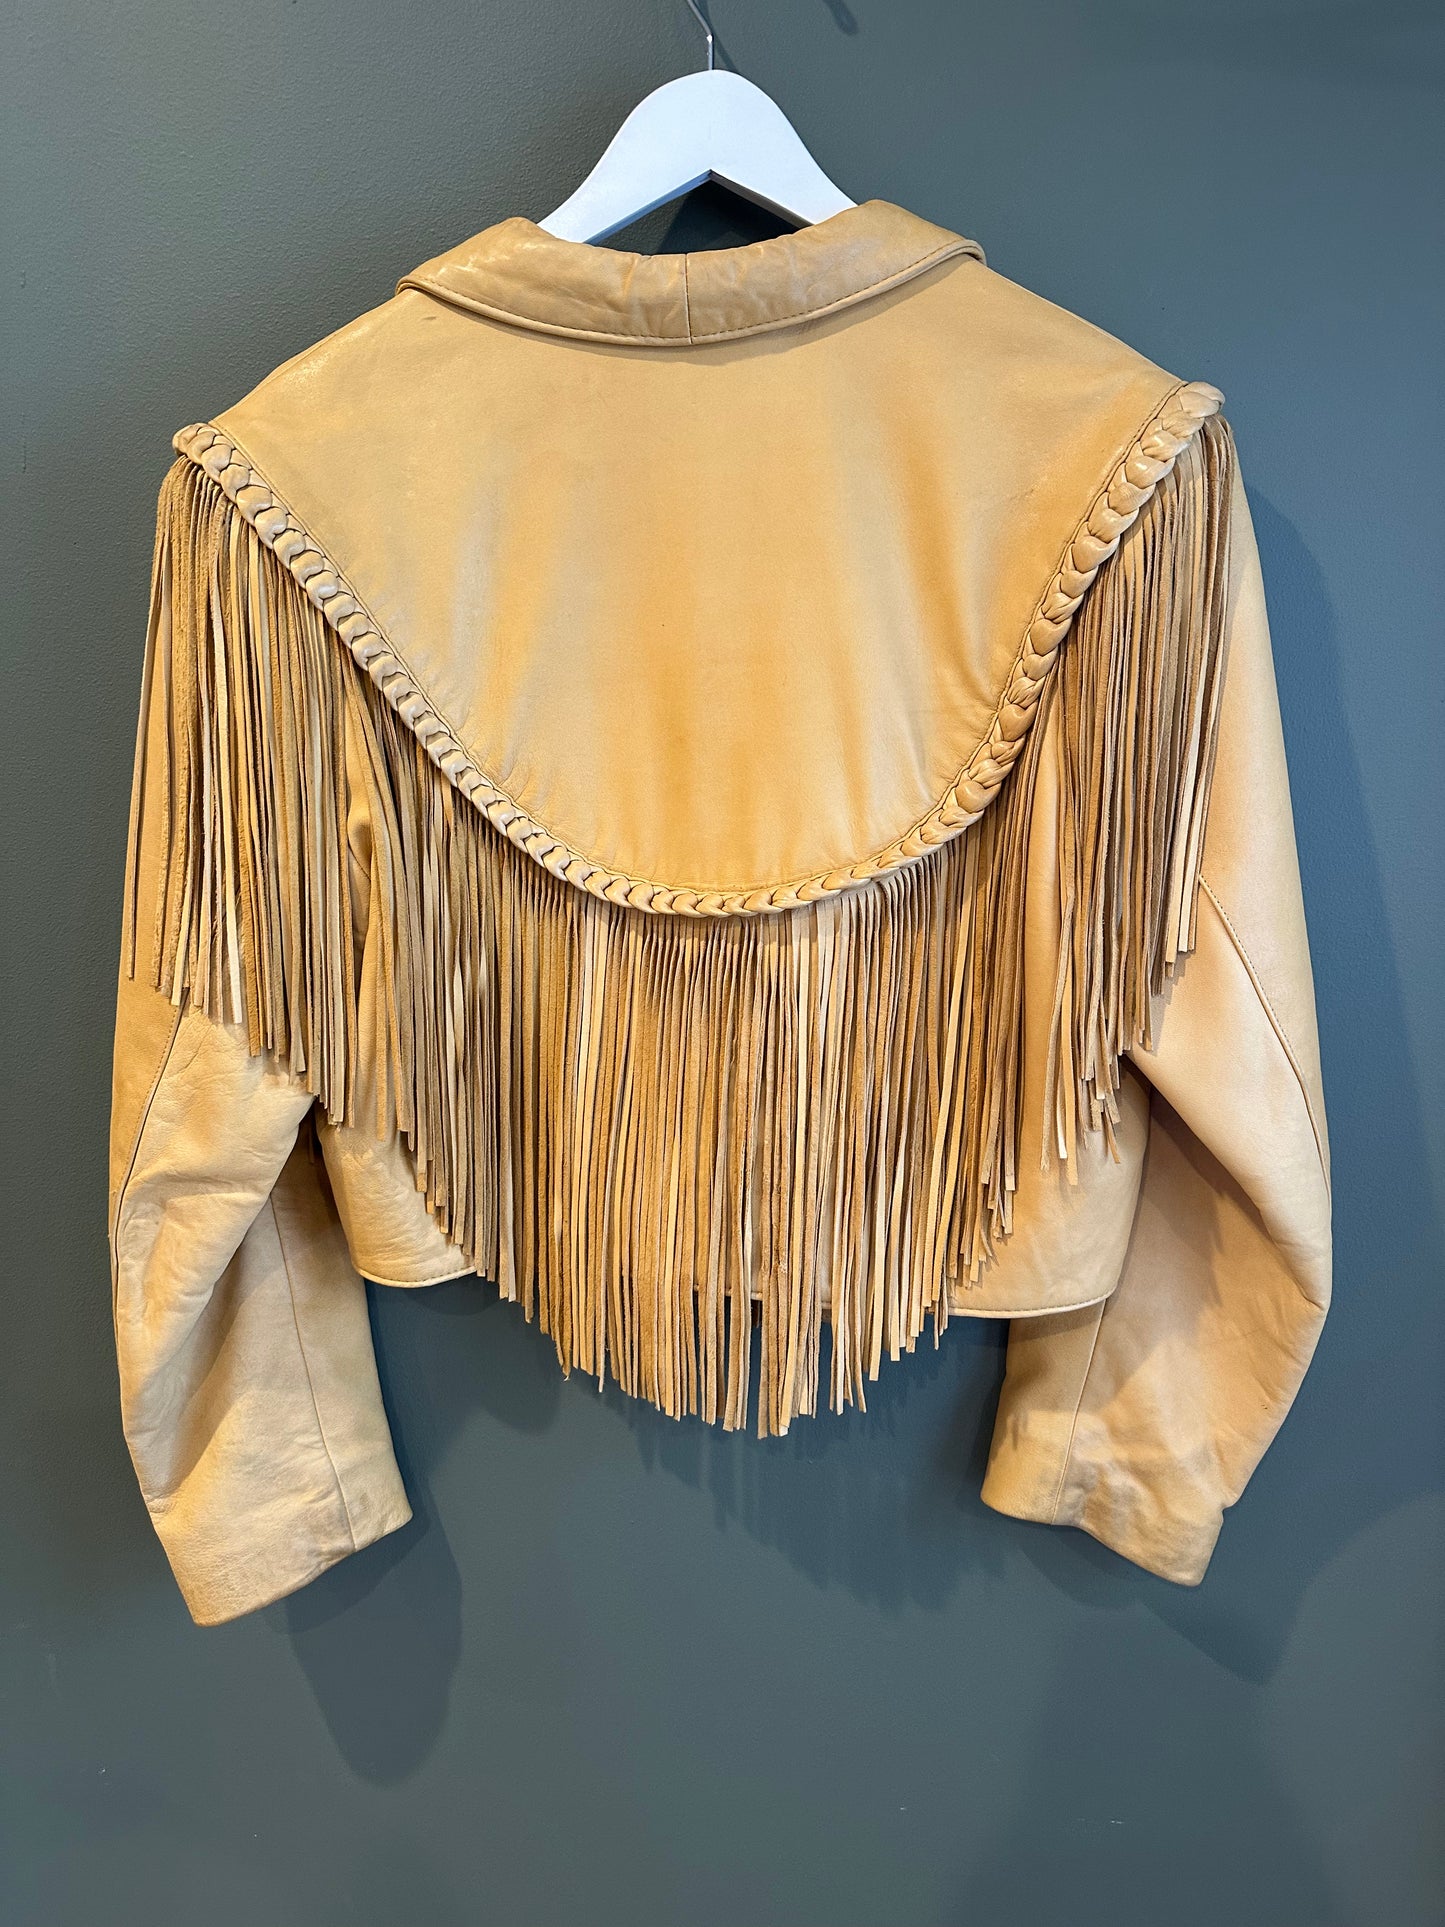 Fringe Leather Coat, 1970’s, 42” Bust